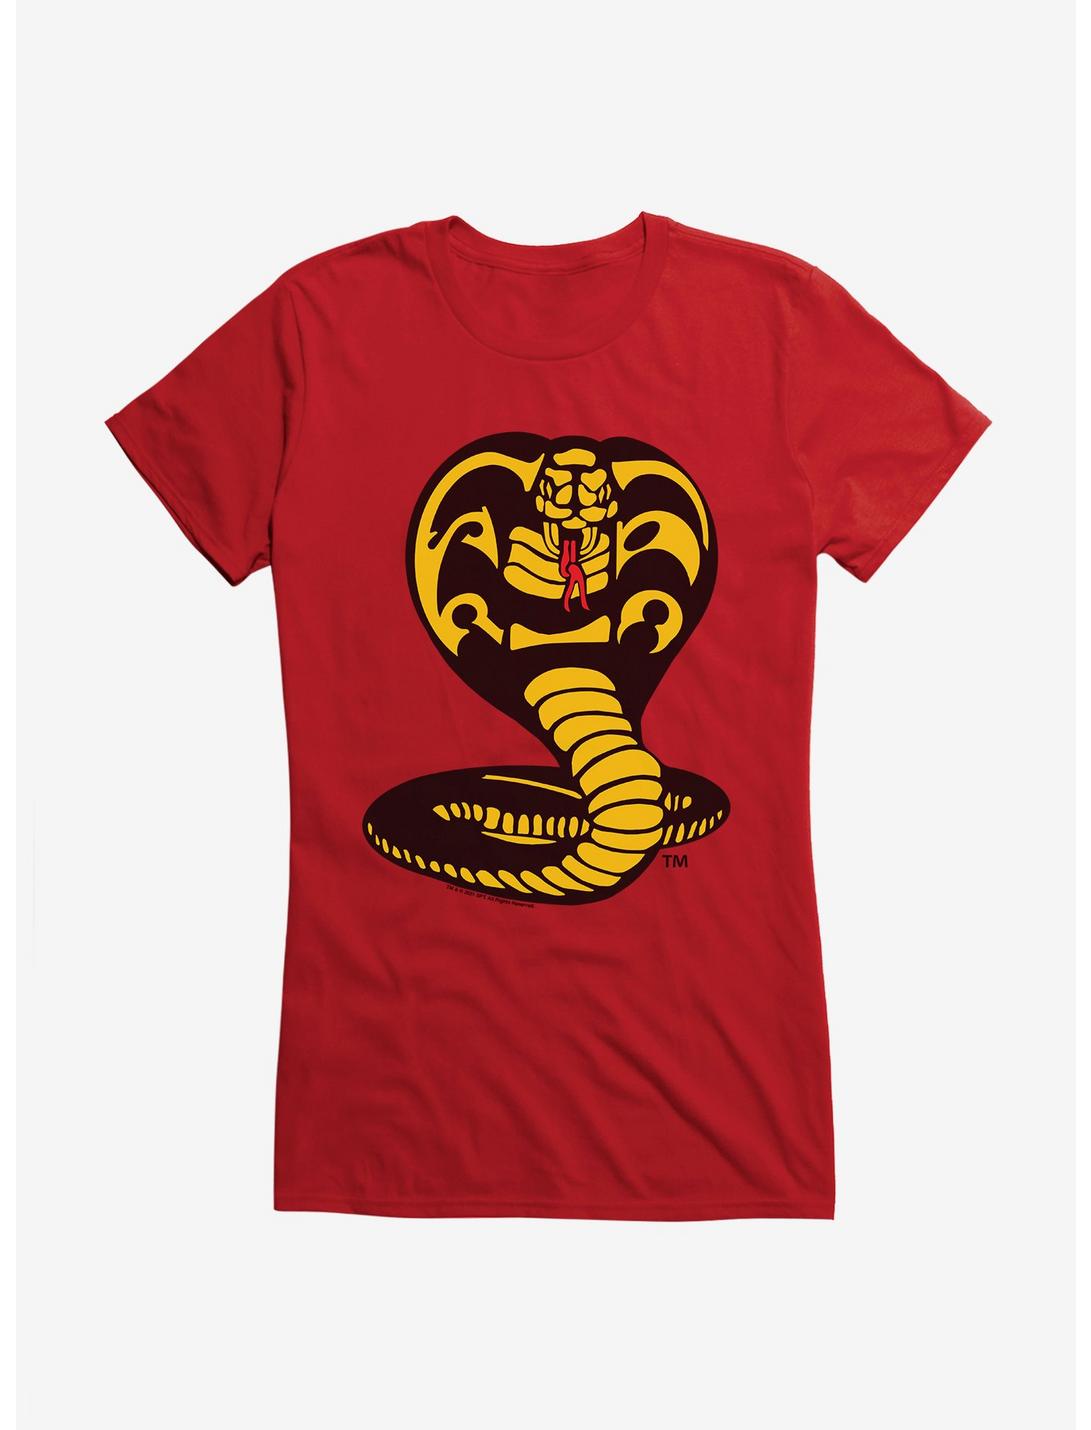 Cobra Kai Logo Girls T-Shirt, RED, hi-res